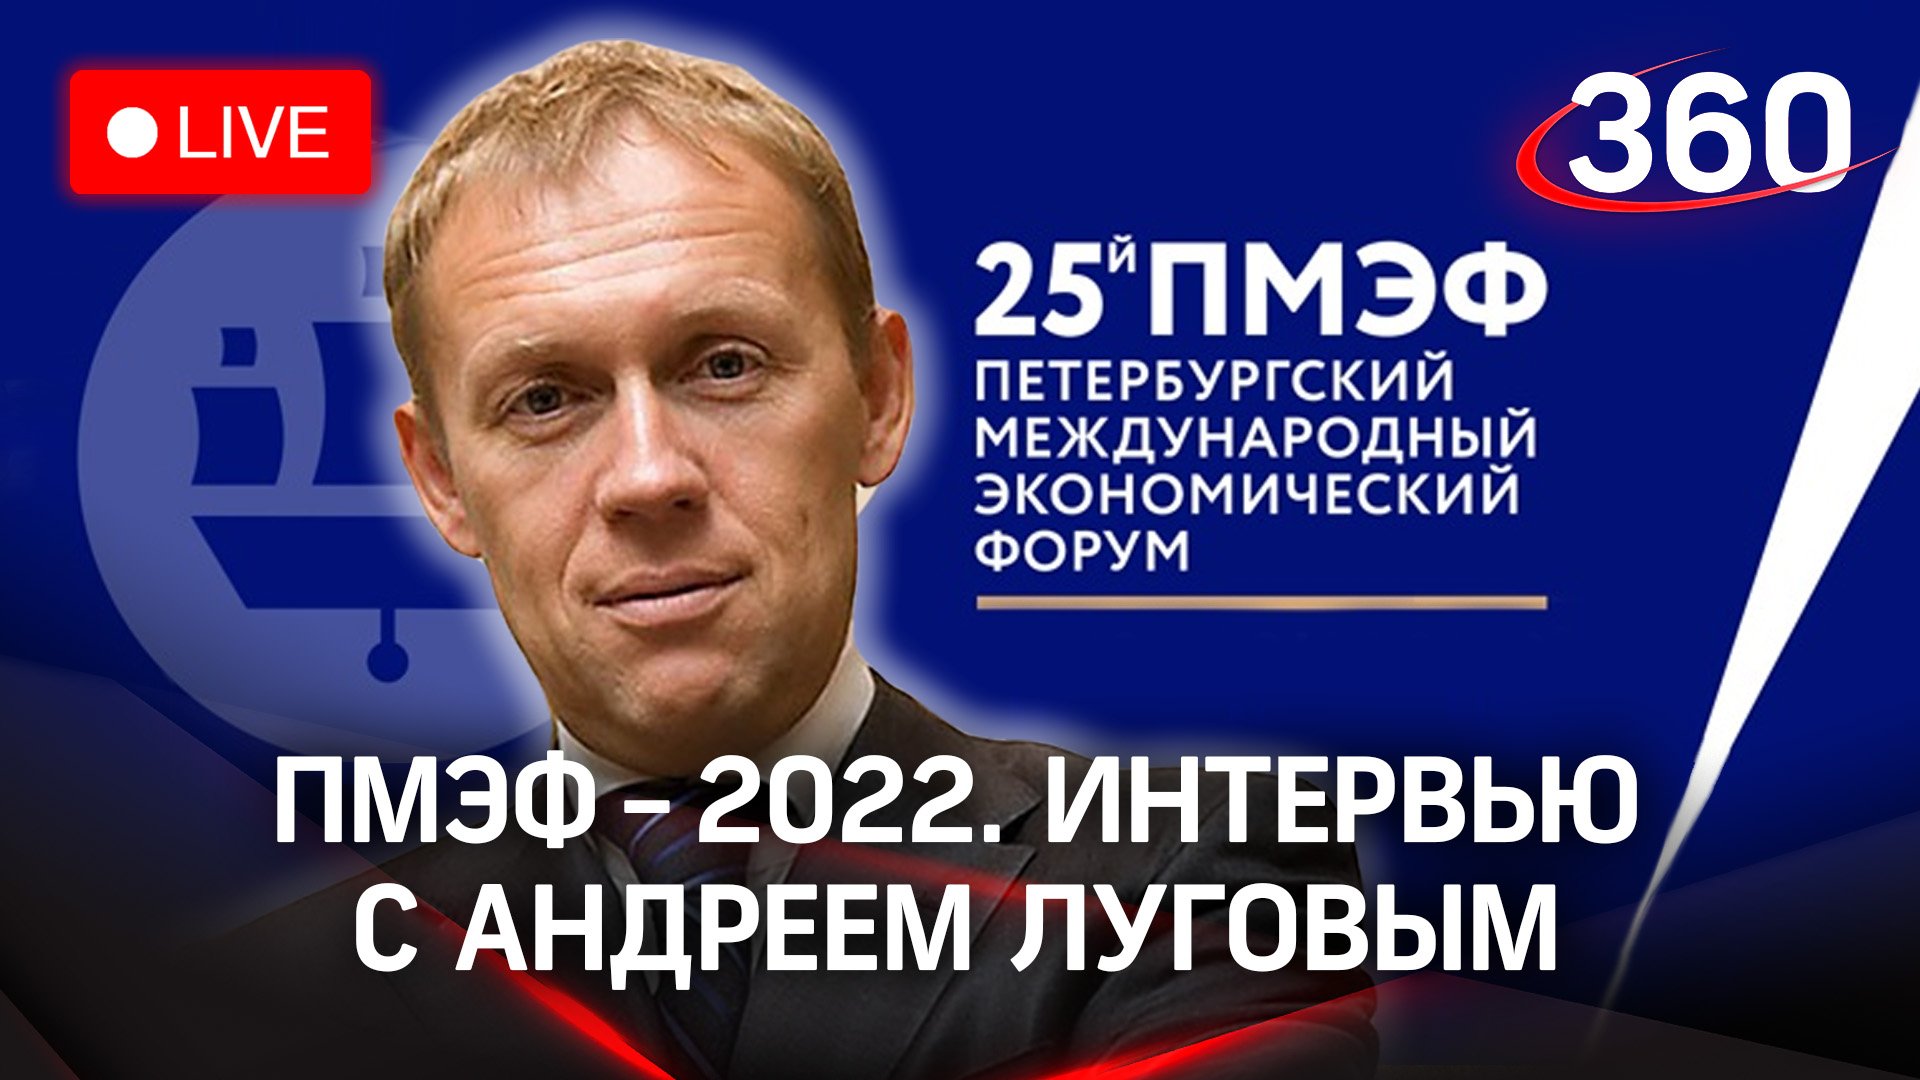 ПМЭФ-2022: интервью с Андреем Луговым, российским политическим деятелем и предпринимателем